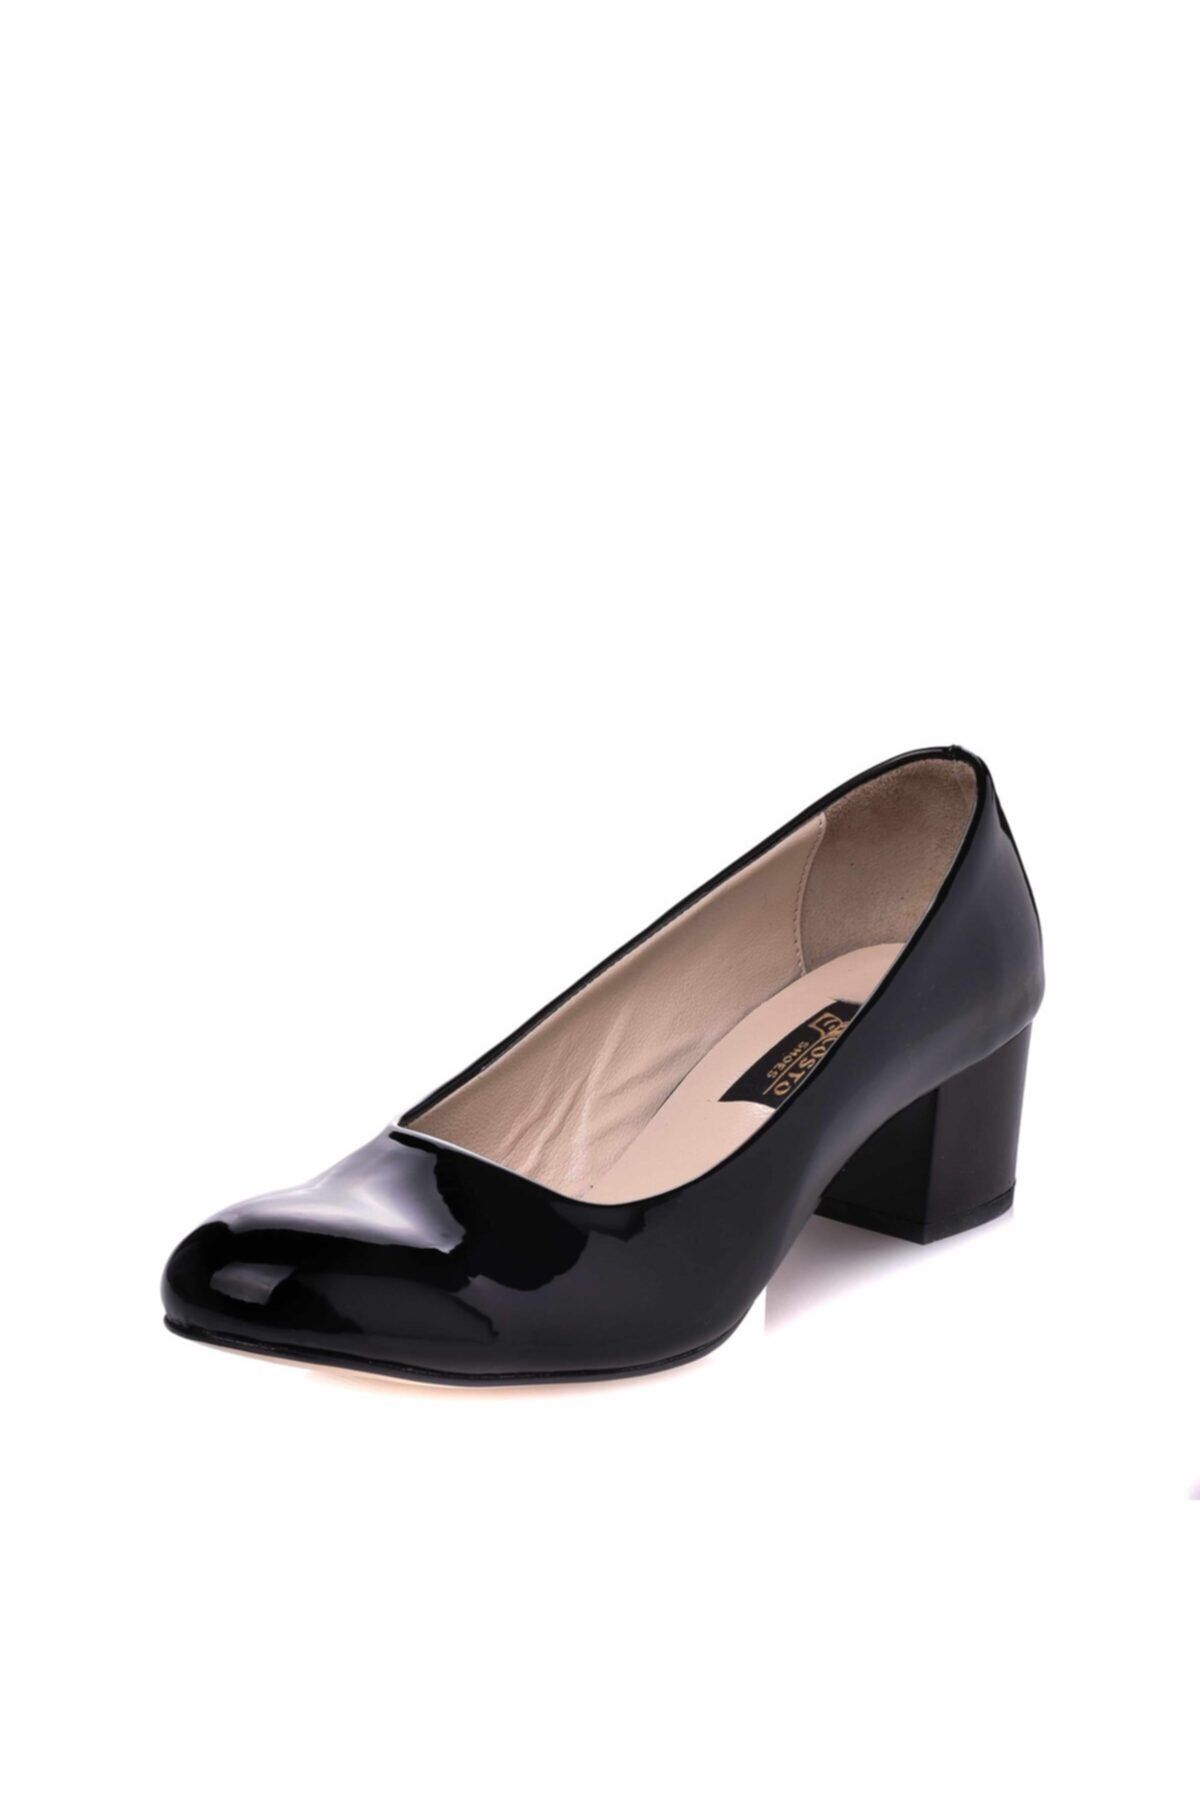 İriadam 1453 Siyah Rugan Büyük Numara Kadın Ayakkabısı